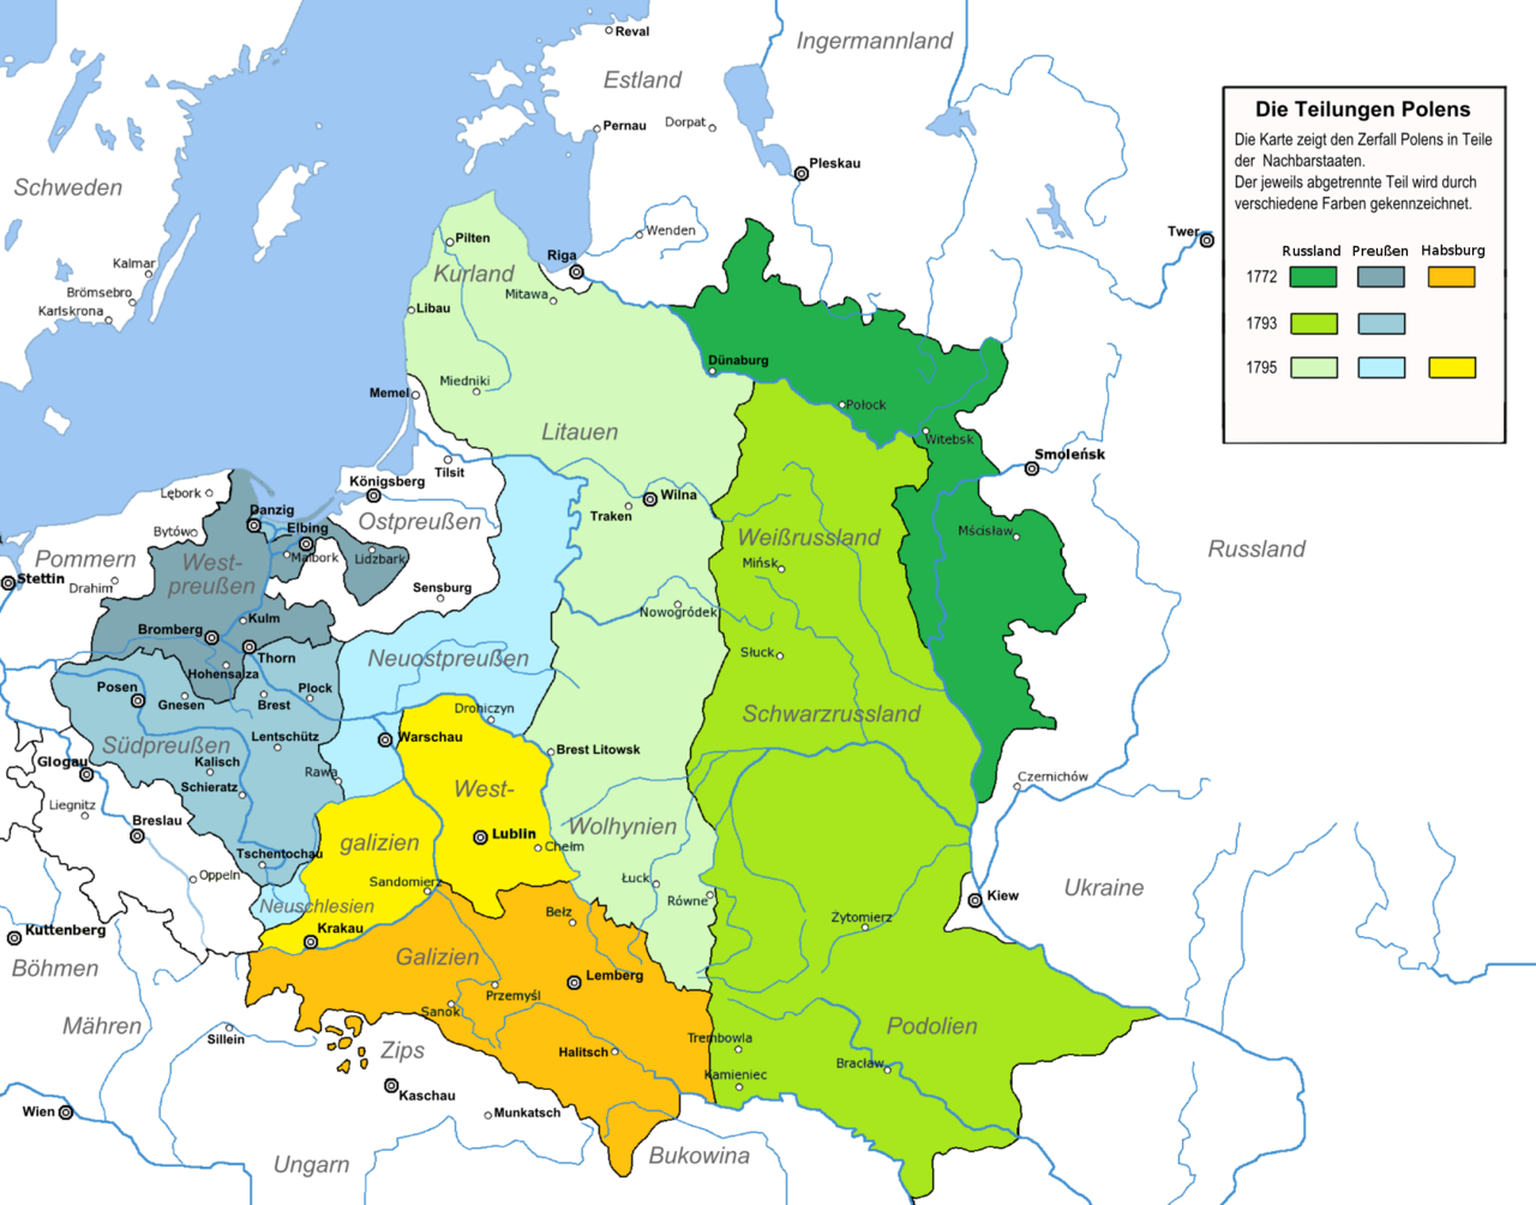 Ende des 18. Jahrhundert wurde Polen durch seine Nachbarstaaten Russland, Preussen und Österreich drei Mal geteilt, so dass am Ende nichts mehr davon übrig blieb. Erst nach dem Ersten Weltkrieg sollte ...